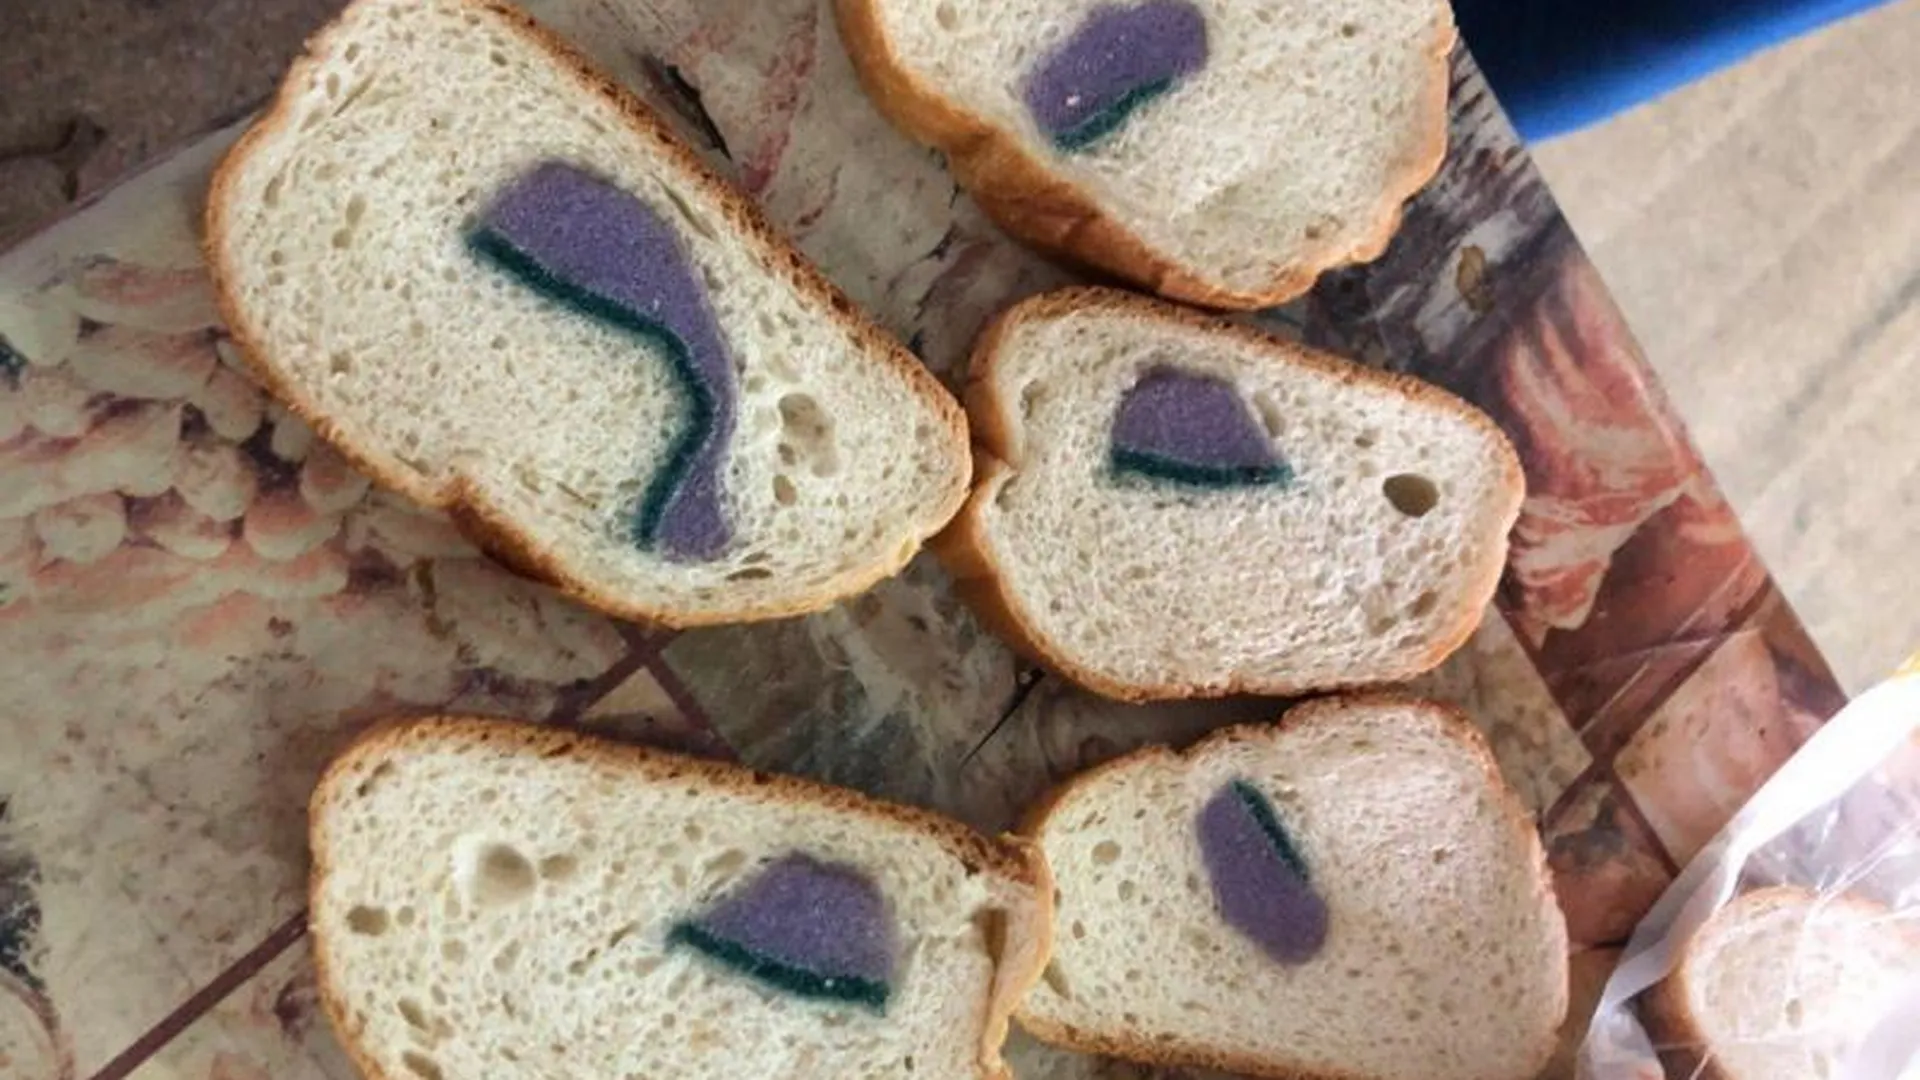 Хлеб с мочалкой в мякише продали жителю Чехова